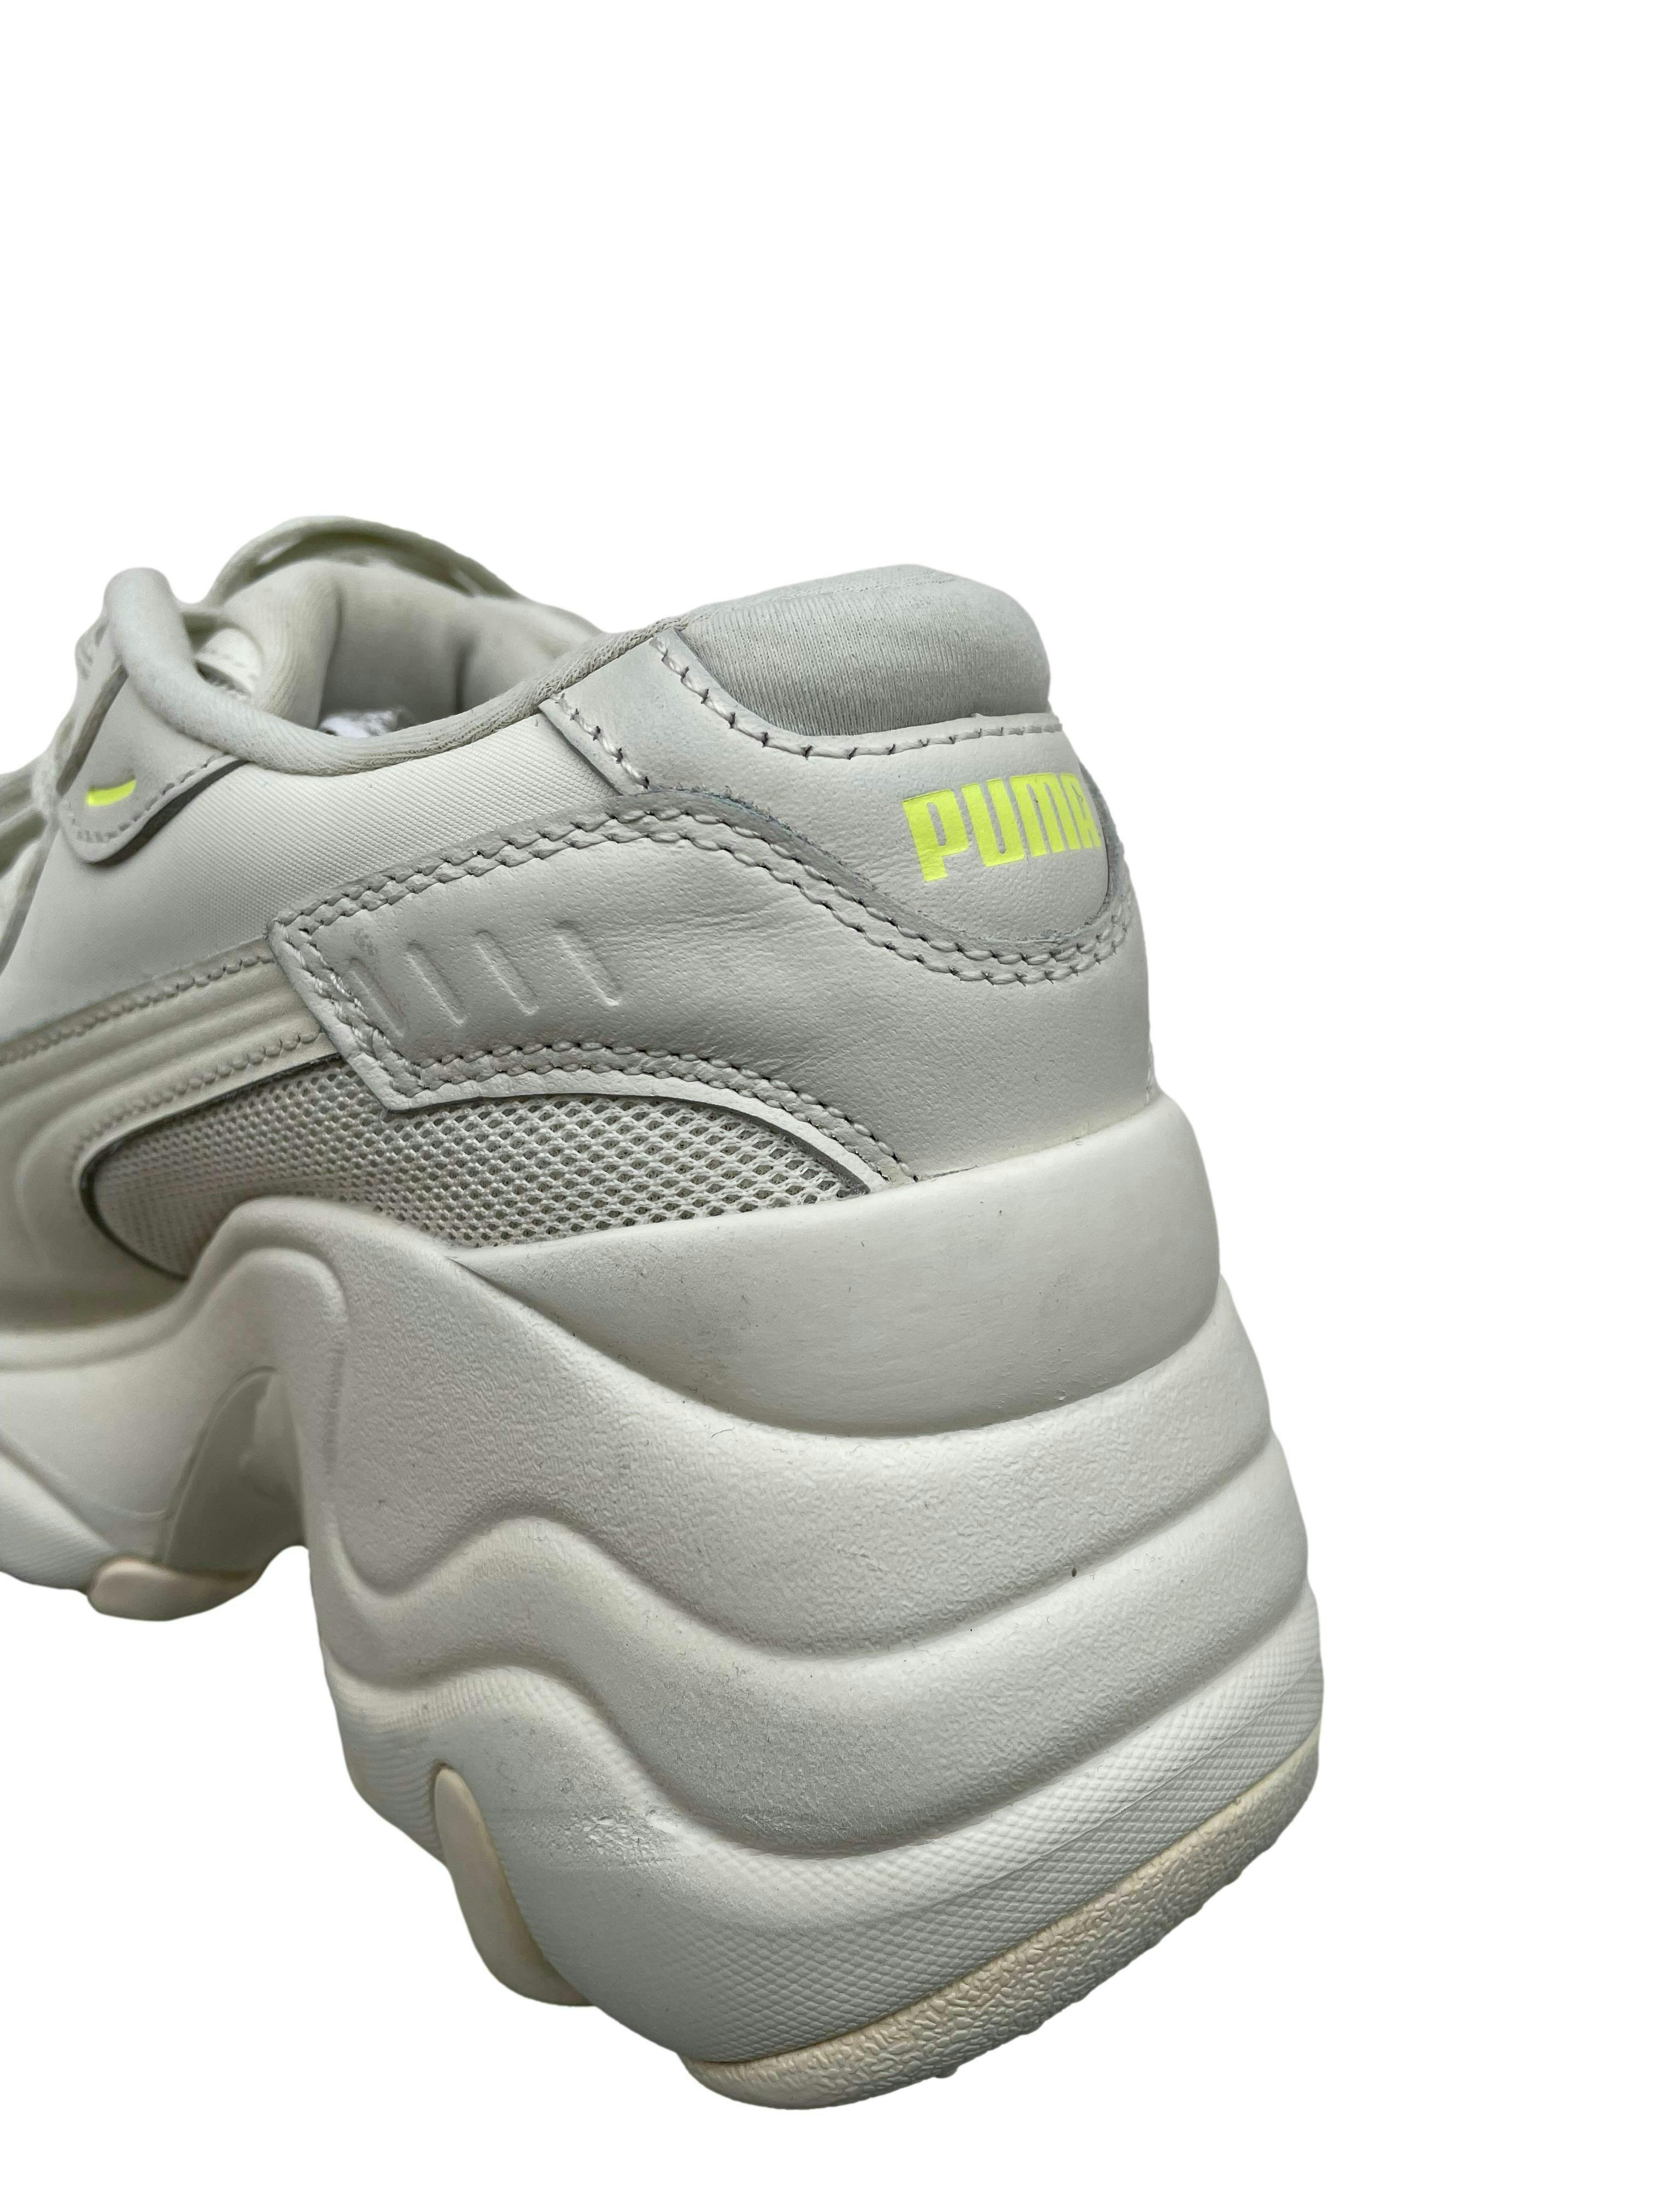 Zapatillas Puma blancas con acentos neón, plataforma 5cm. Estado 8/10